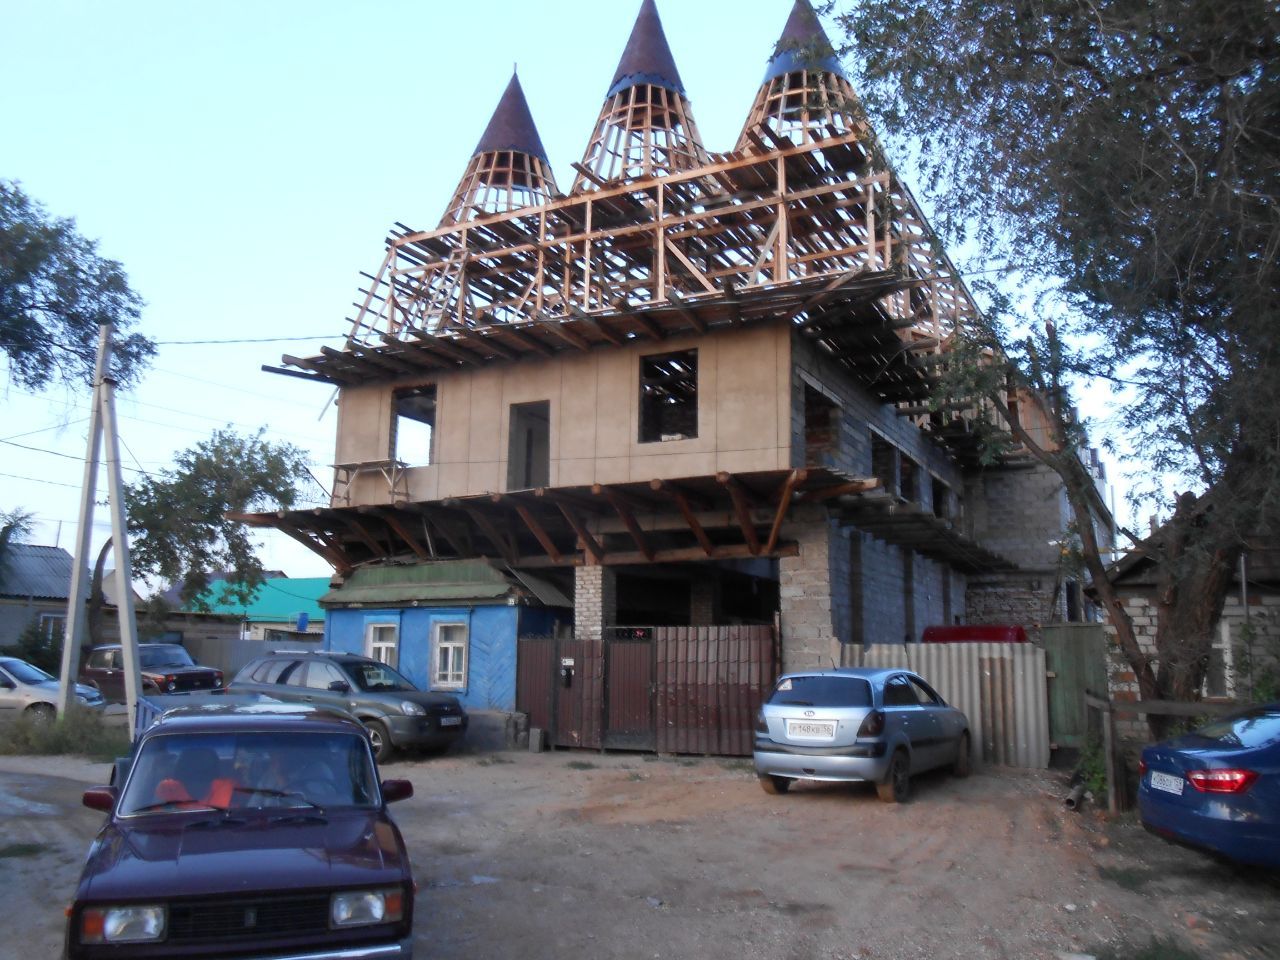 дома строятся, чтоб принять больше гостей - Арбузный фестиваль в Соль- Илецке